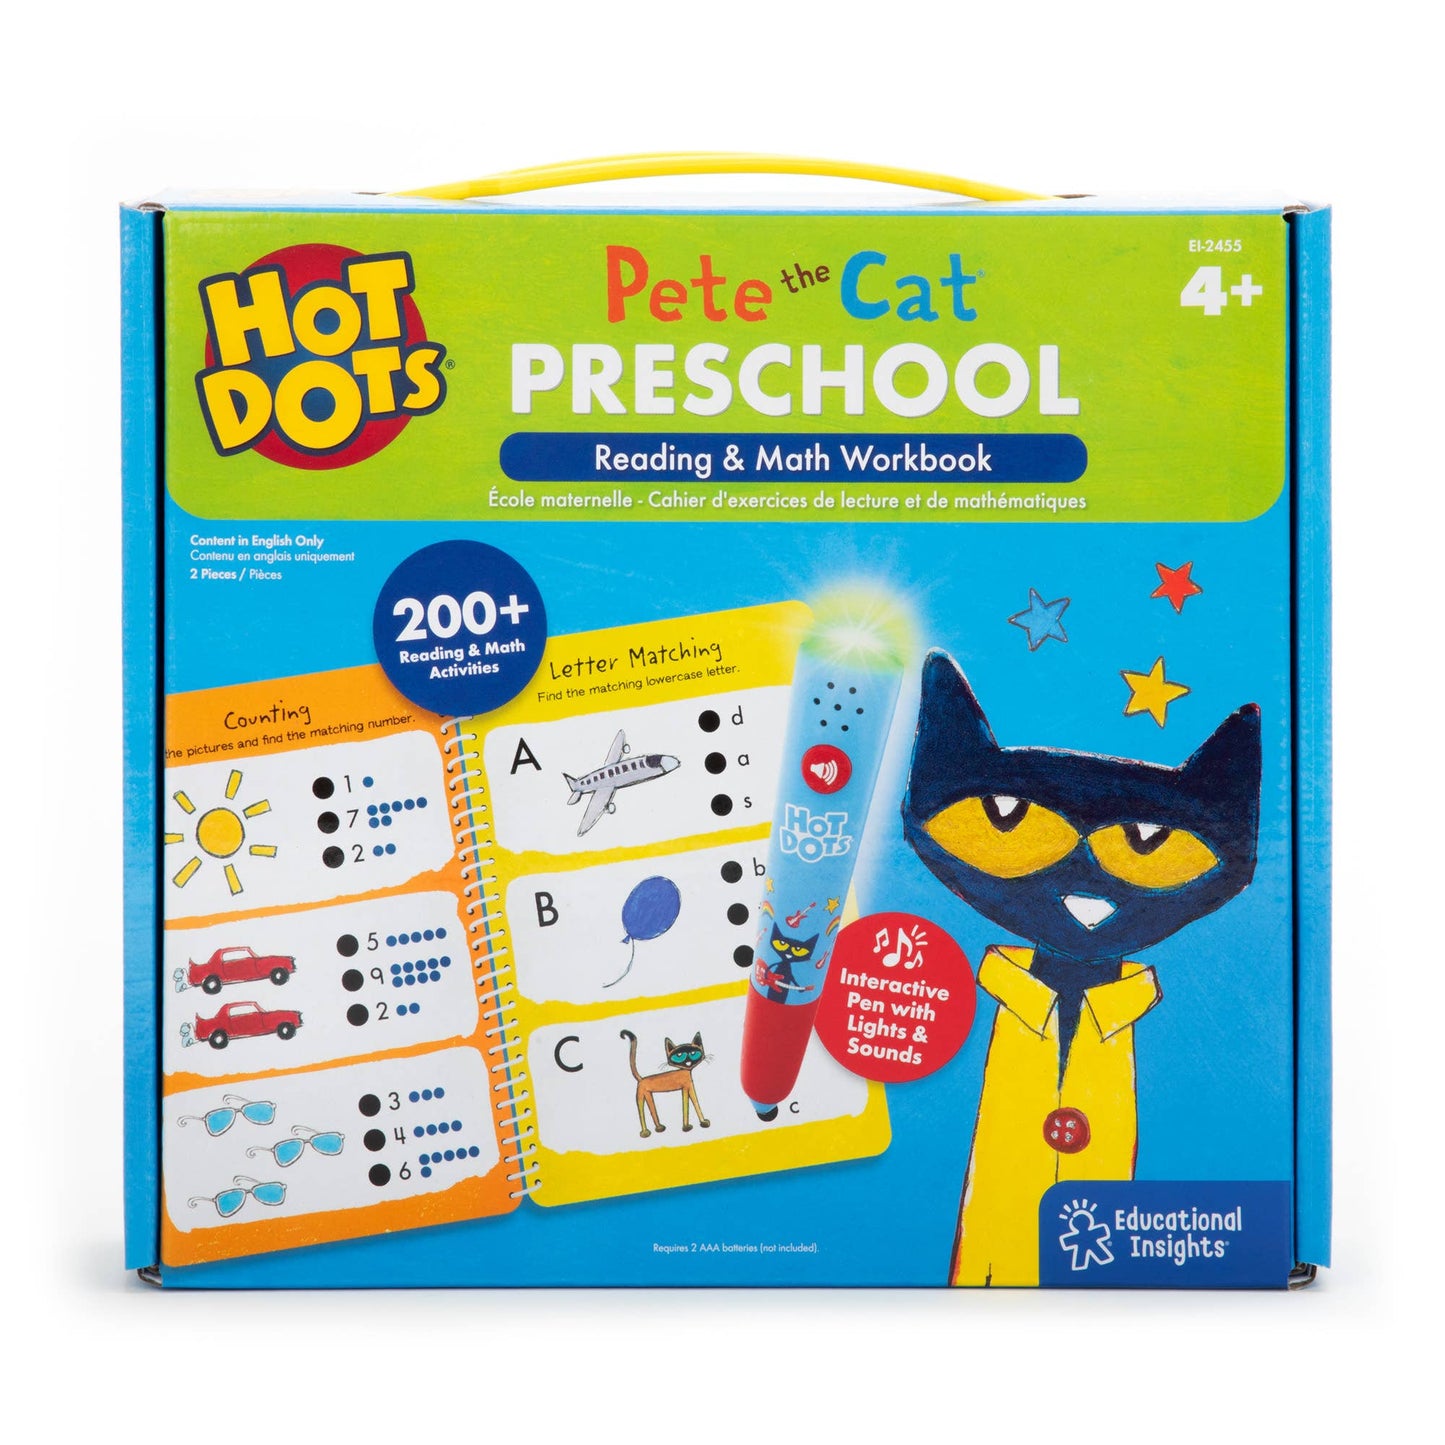 Hot Dots Pete the Cat Preschool Reading & Math Workbook